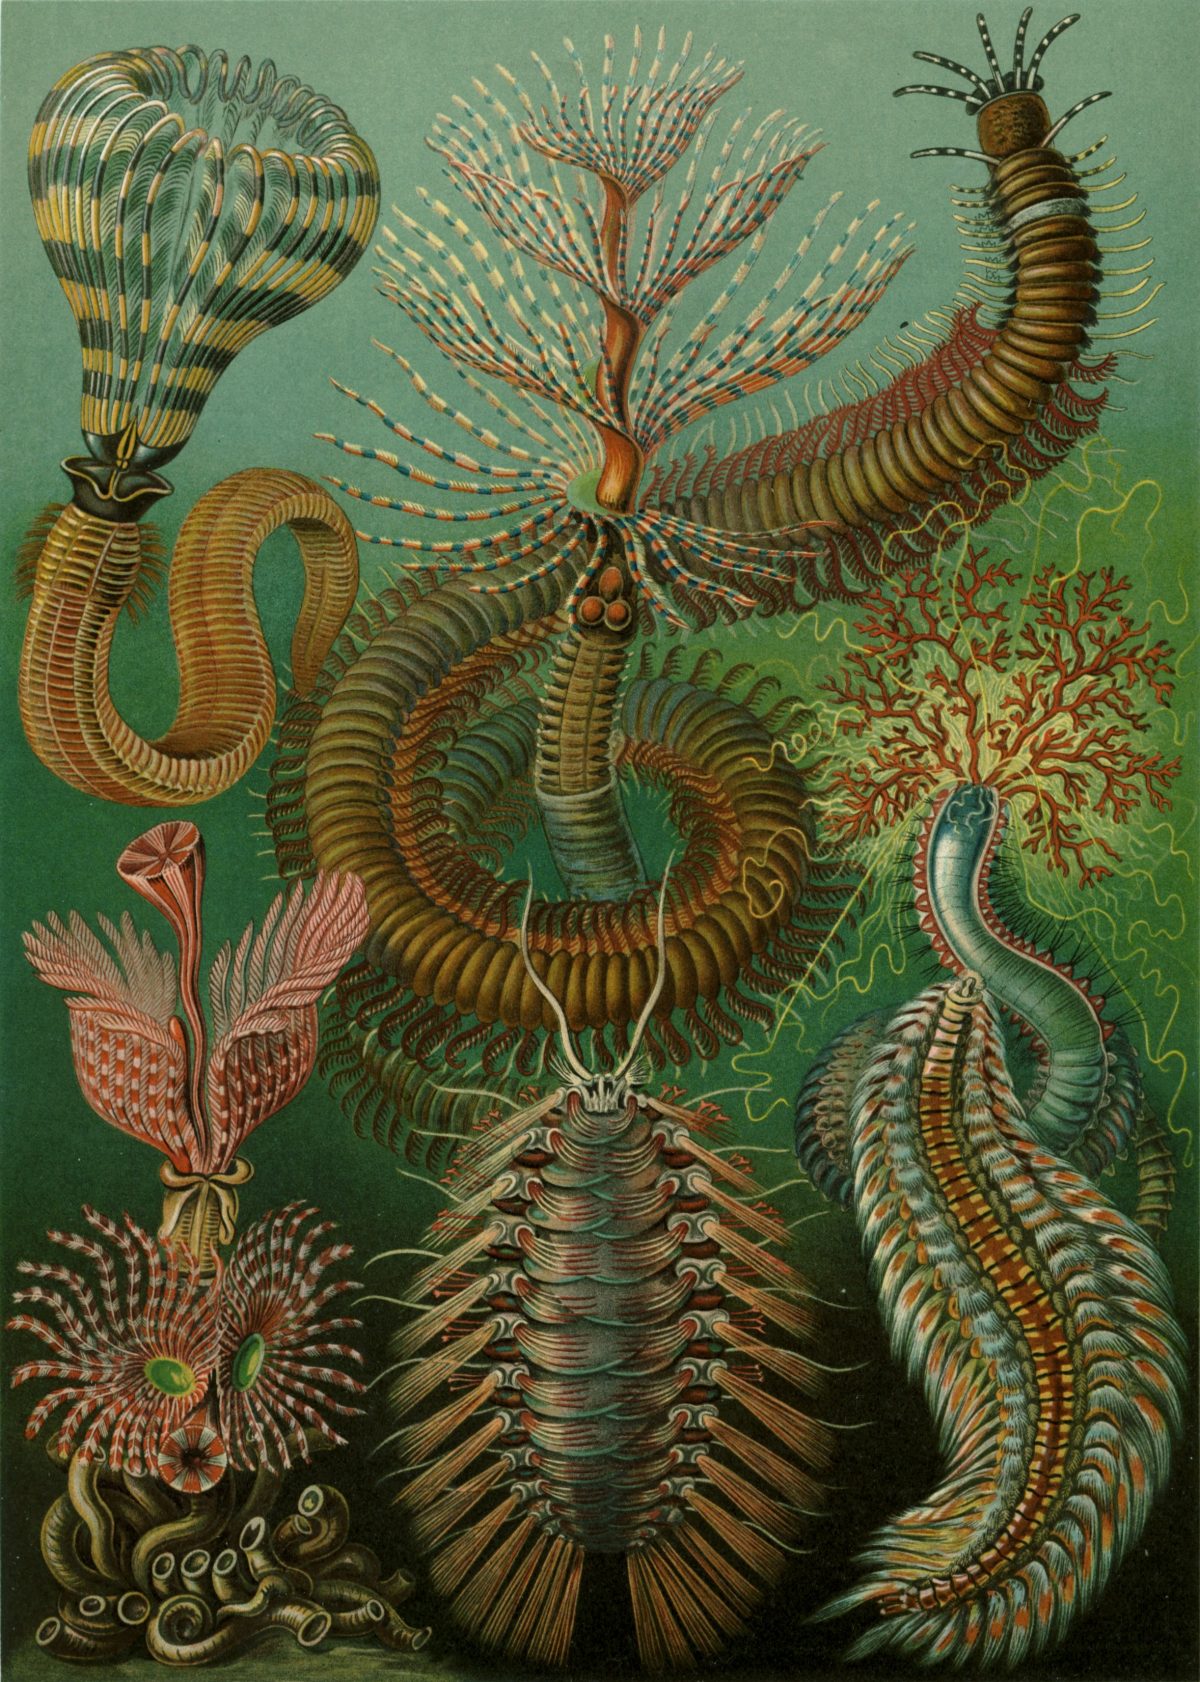 Ernst Haeckel - Kunstformen der Natur (1904), plate 96: Chaetopoda